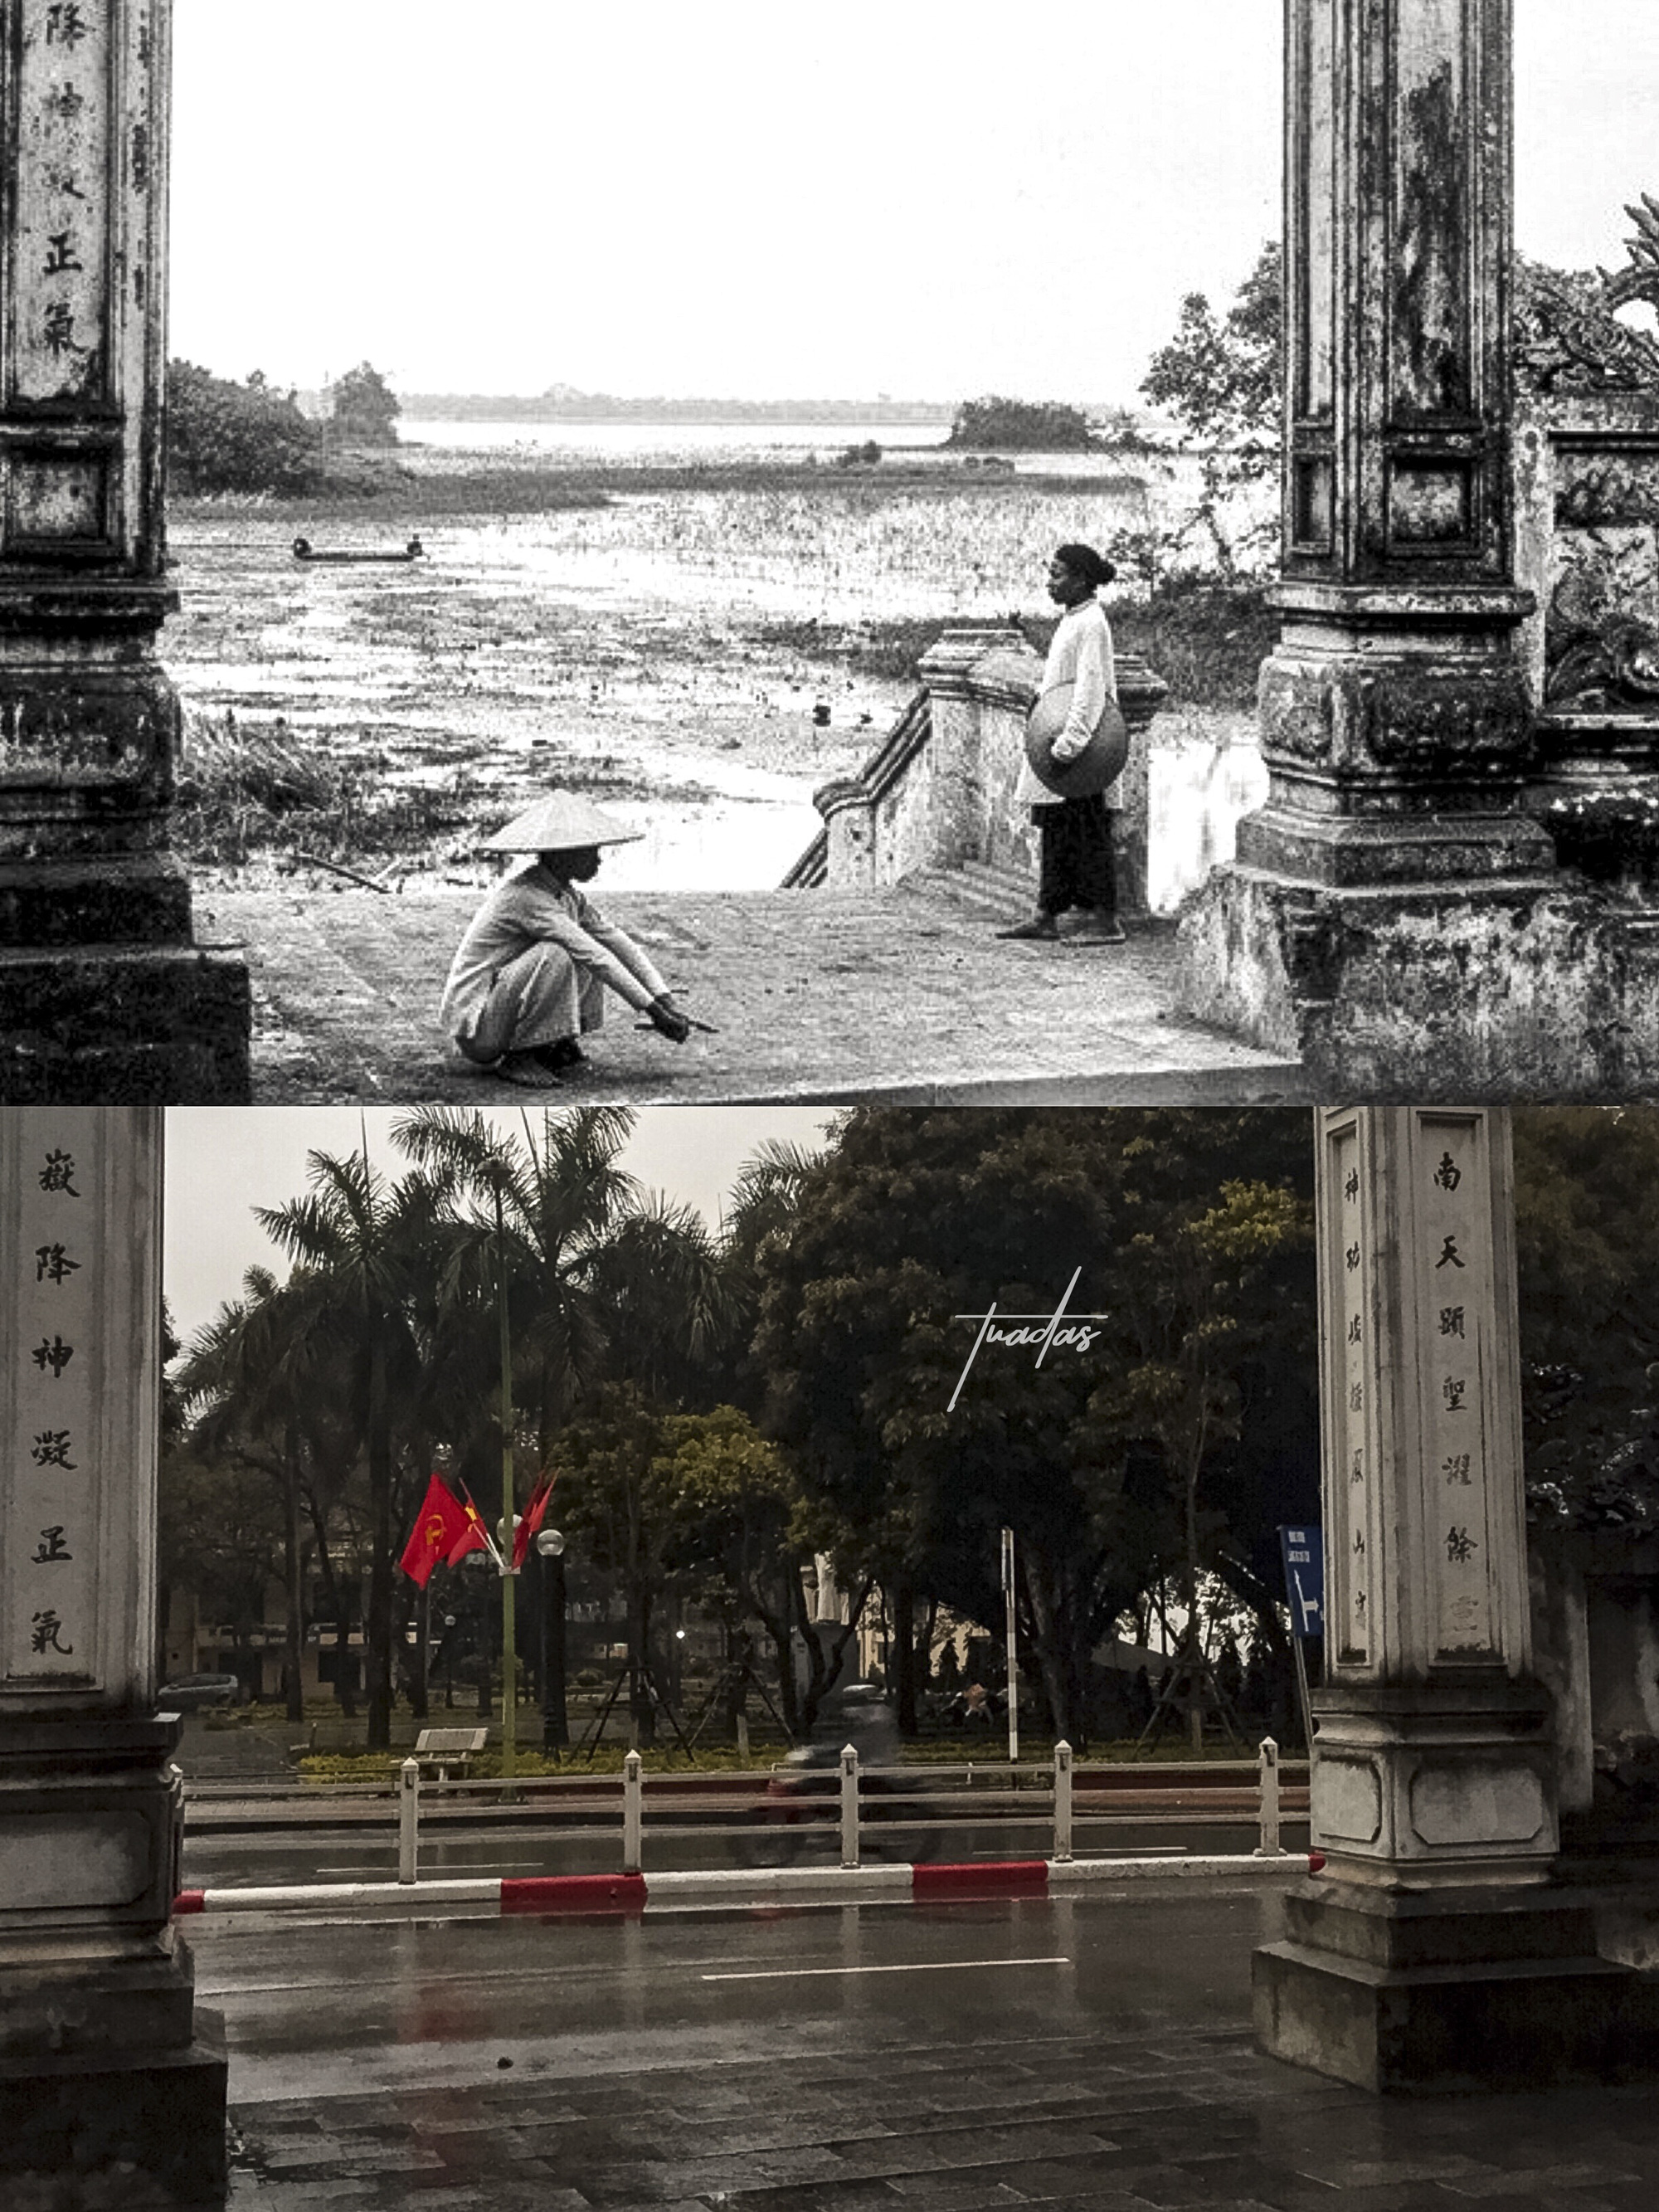 Chàng trai 25 tuổi dành 7 năm chụp bộ ảnh Hà Nội 100 năm trước: Vì thời gian là thứ không thể lấy lại được  - Ảnh 7.